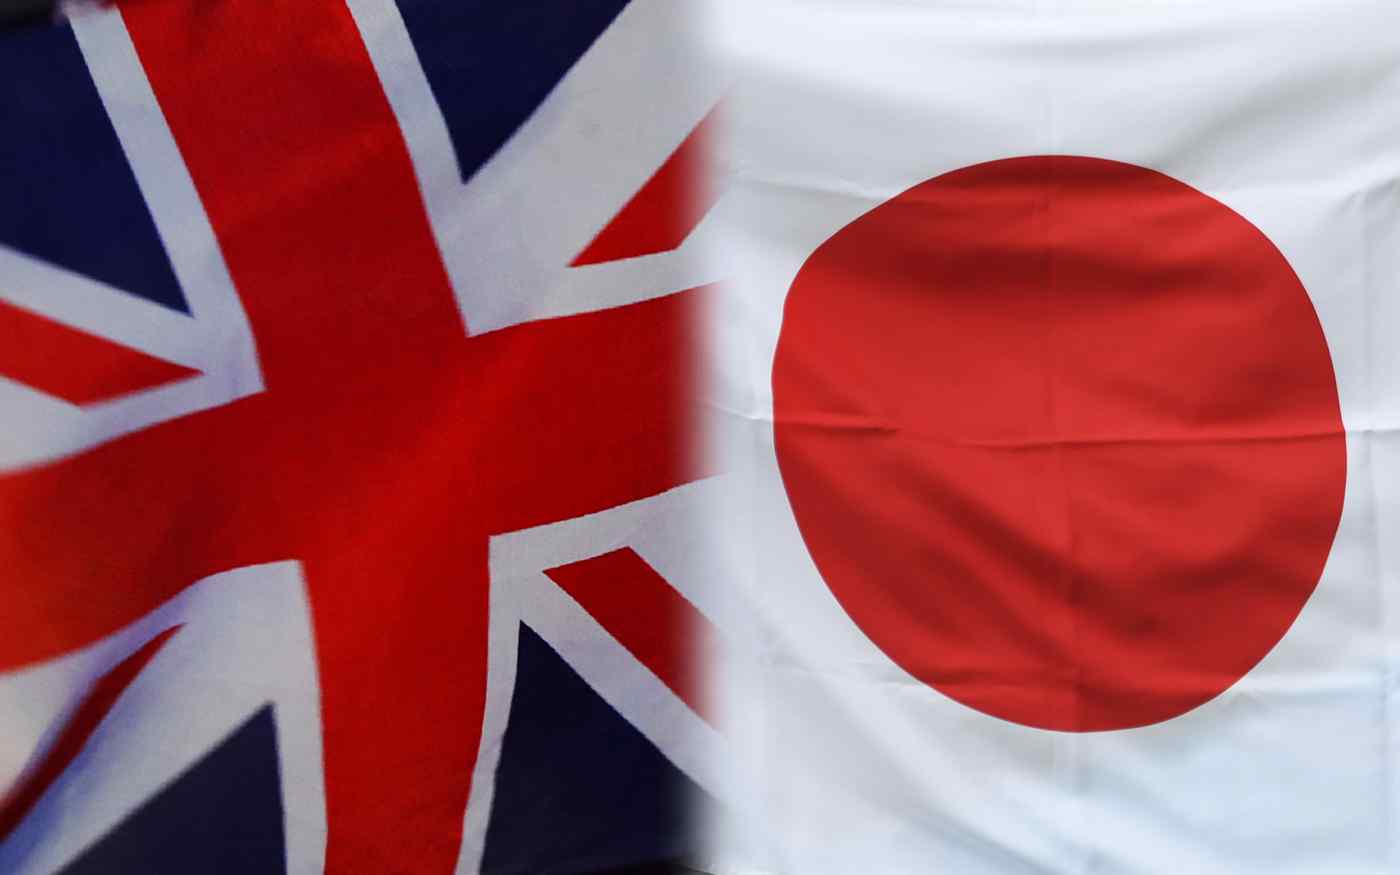 اليابان والمملكة المتحدة تستثمران بشكل مشترك في المعادن المهمة في أفريقيا